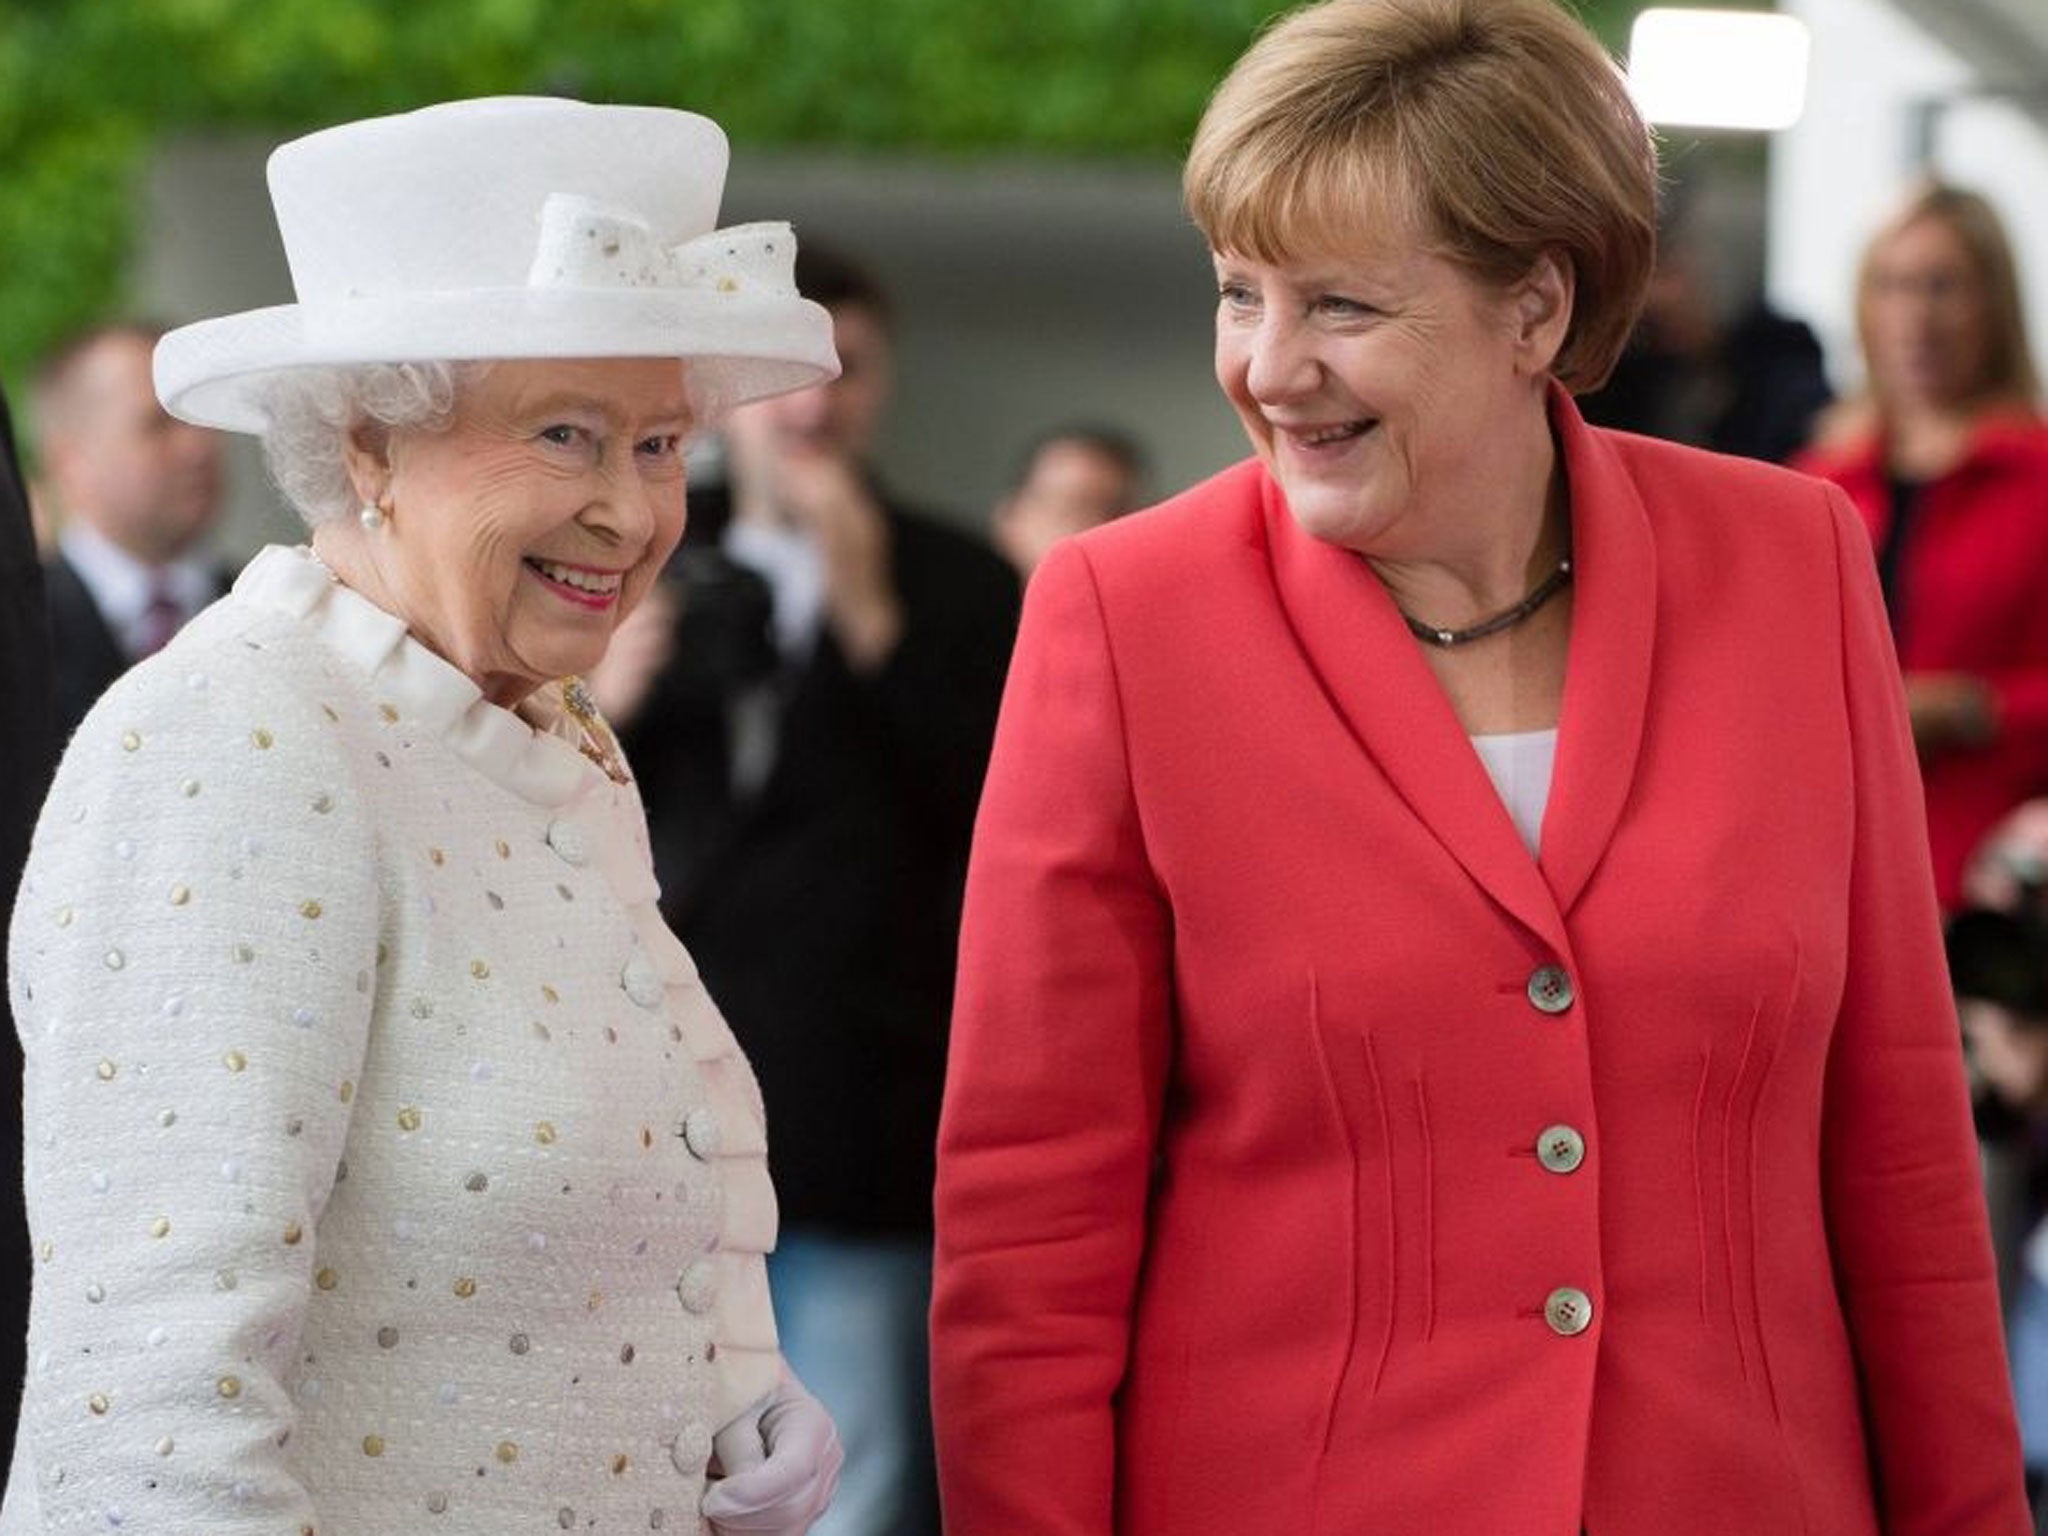 The Queen also met German Chancellor Angela Merkel during her visit